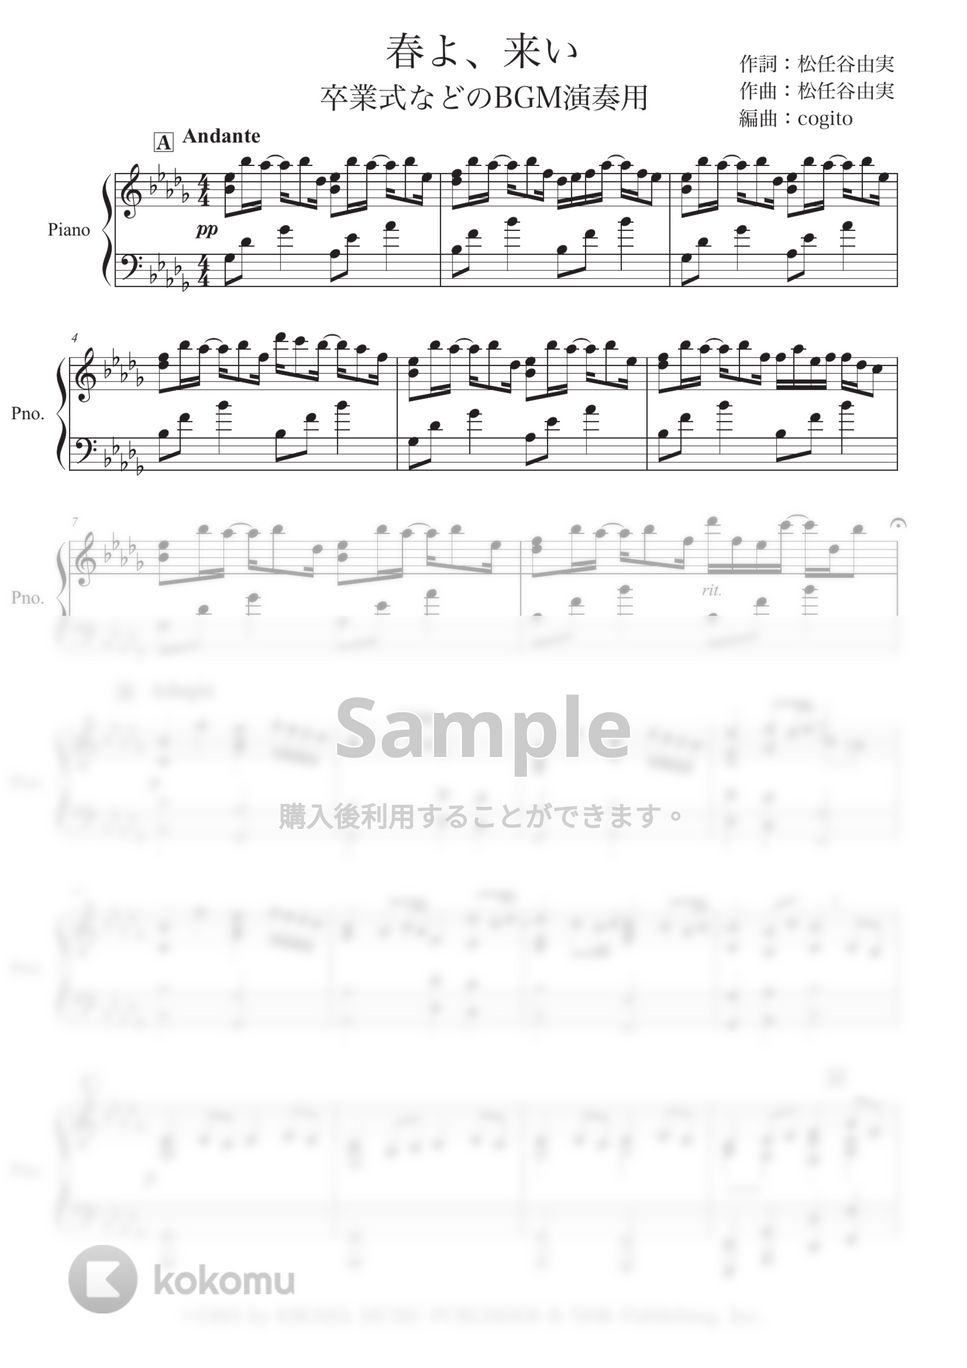 松任谷 由実 - 春よ、来い (卒業式BGM演奏用) by コギト